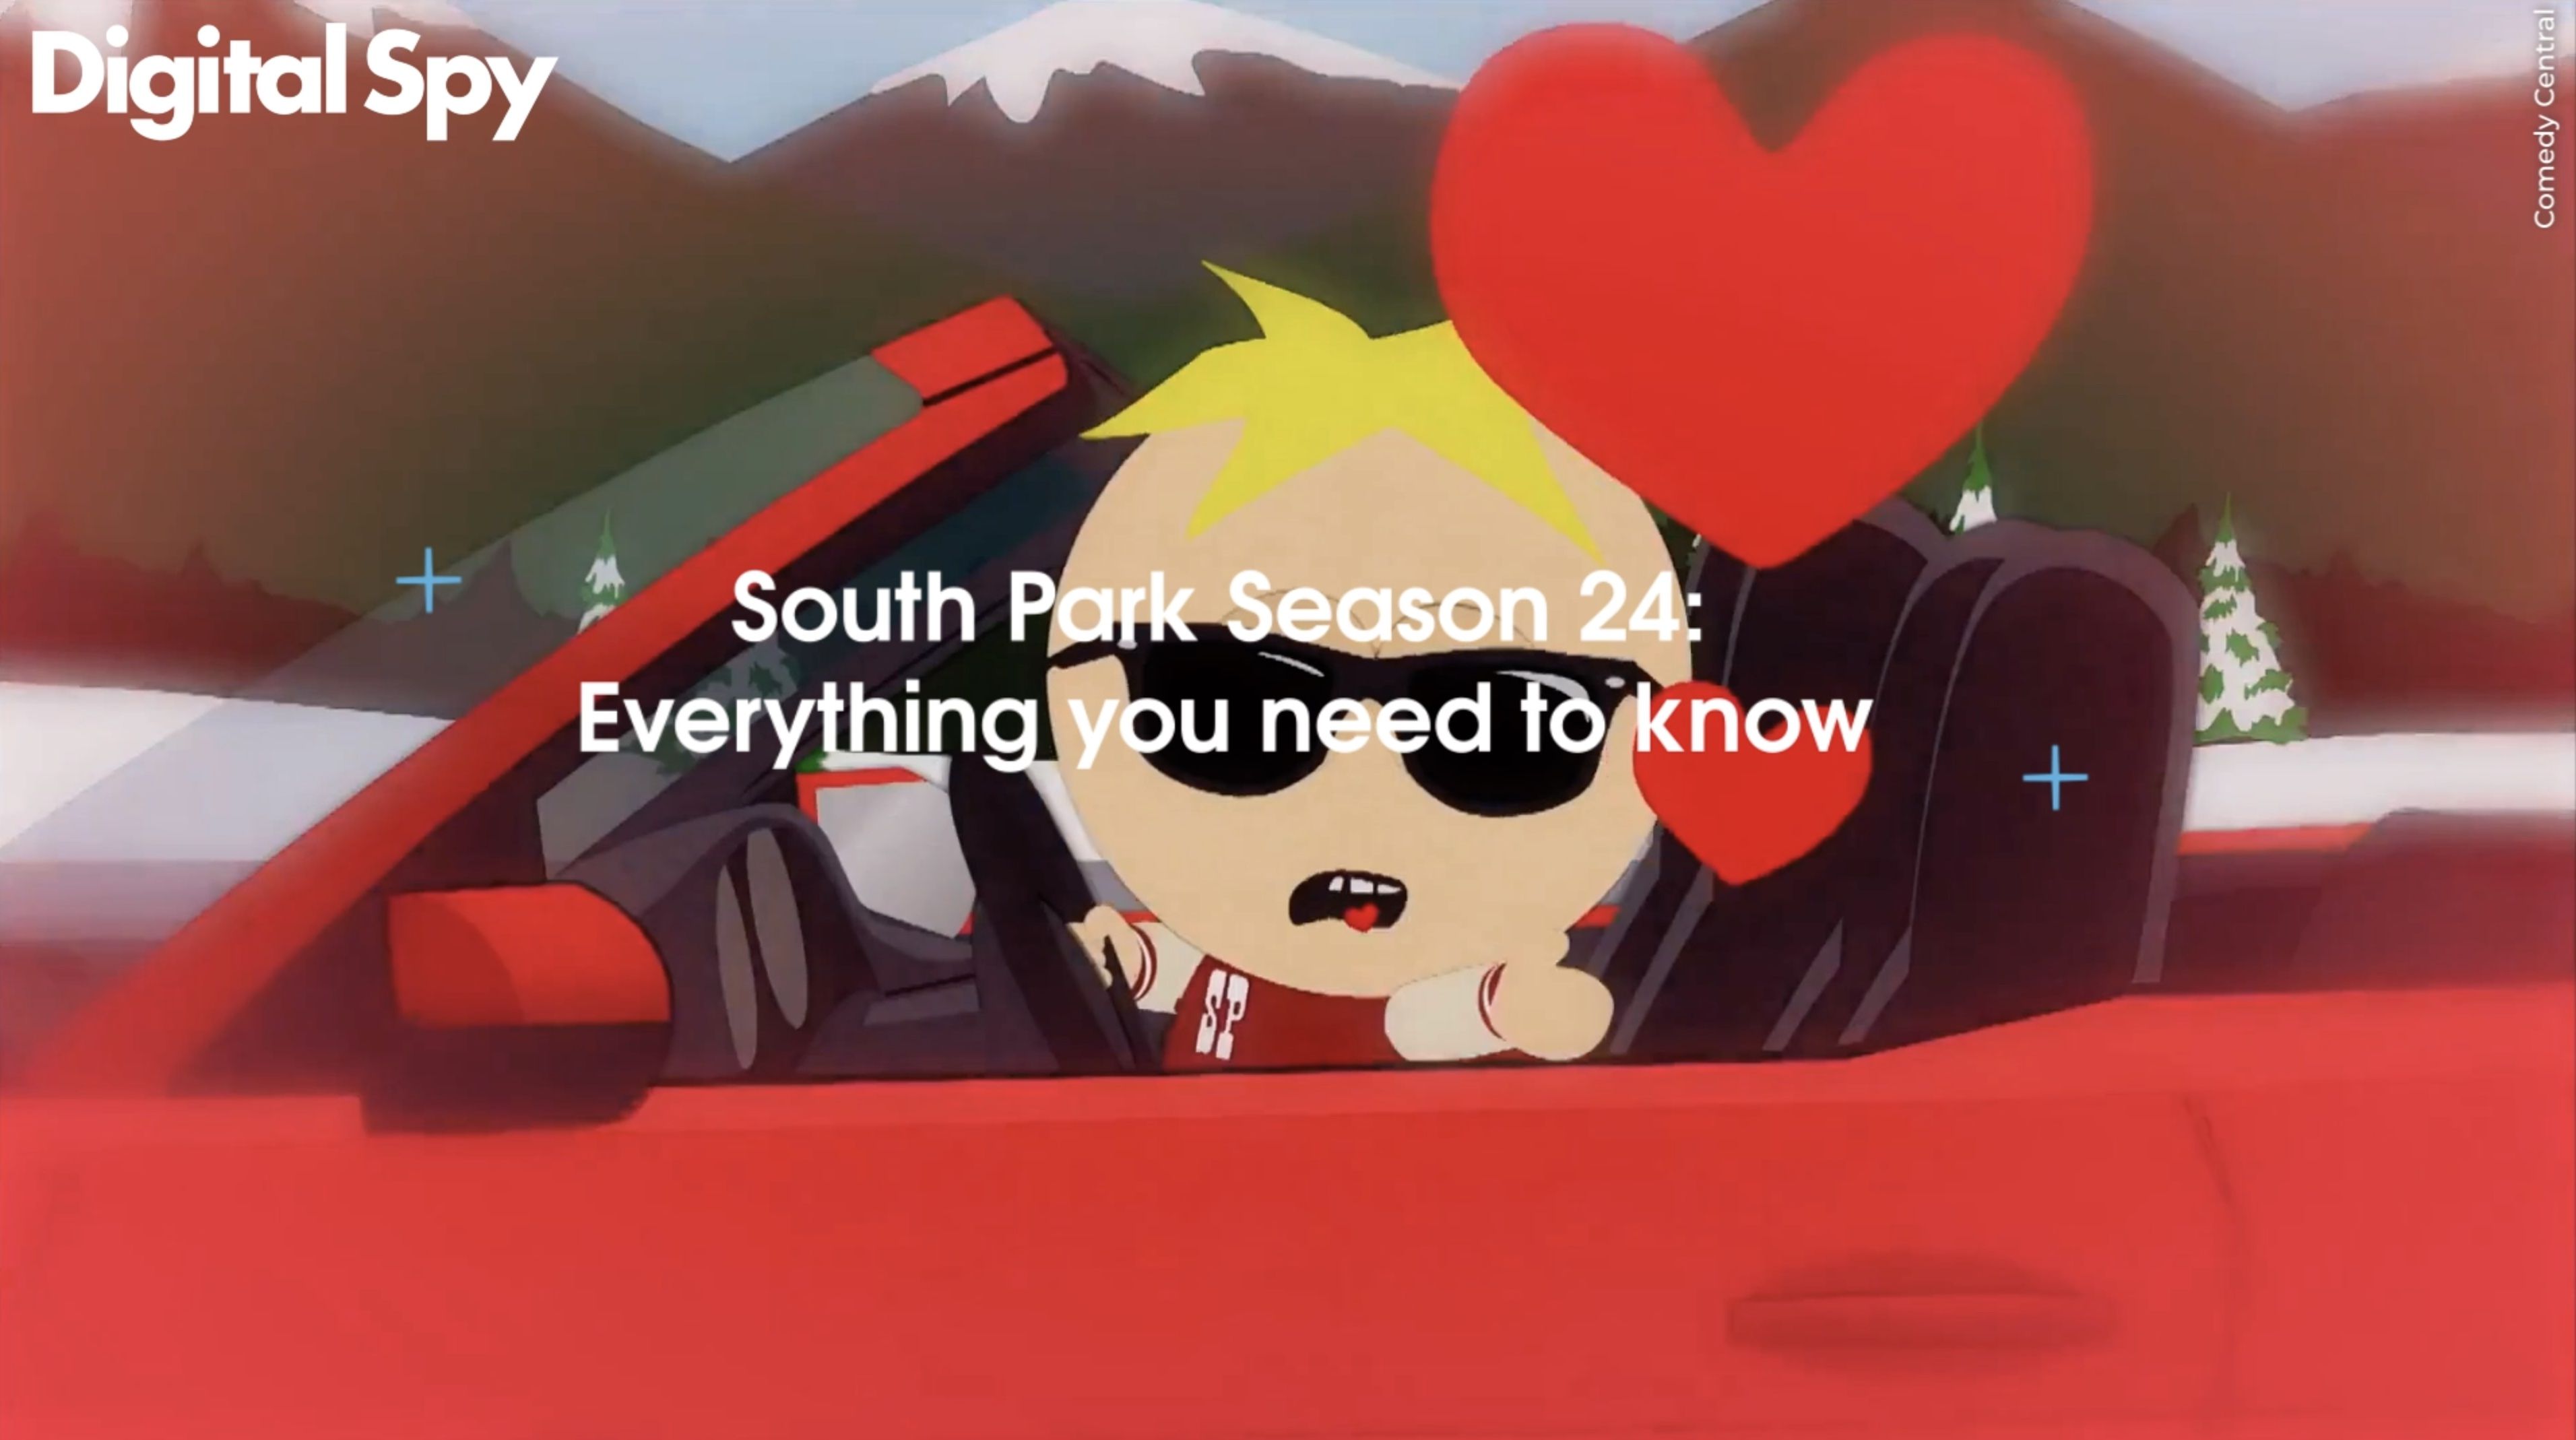 best south park season 19 episodes